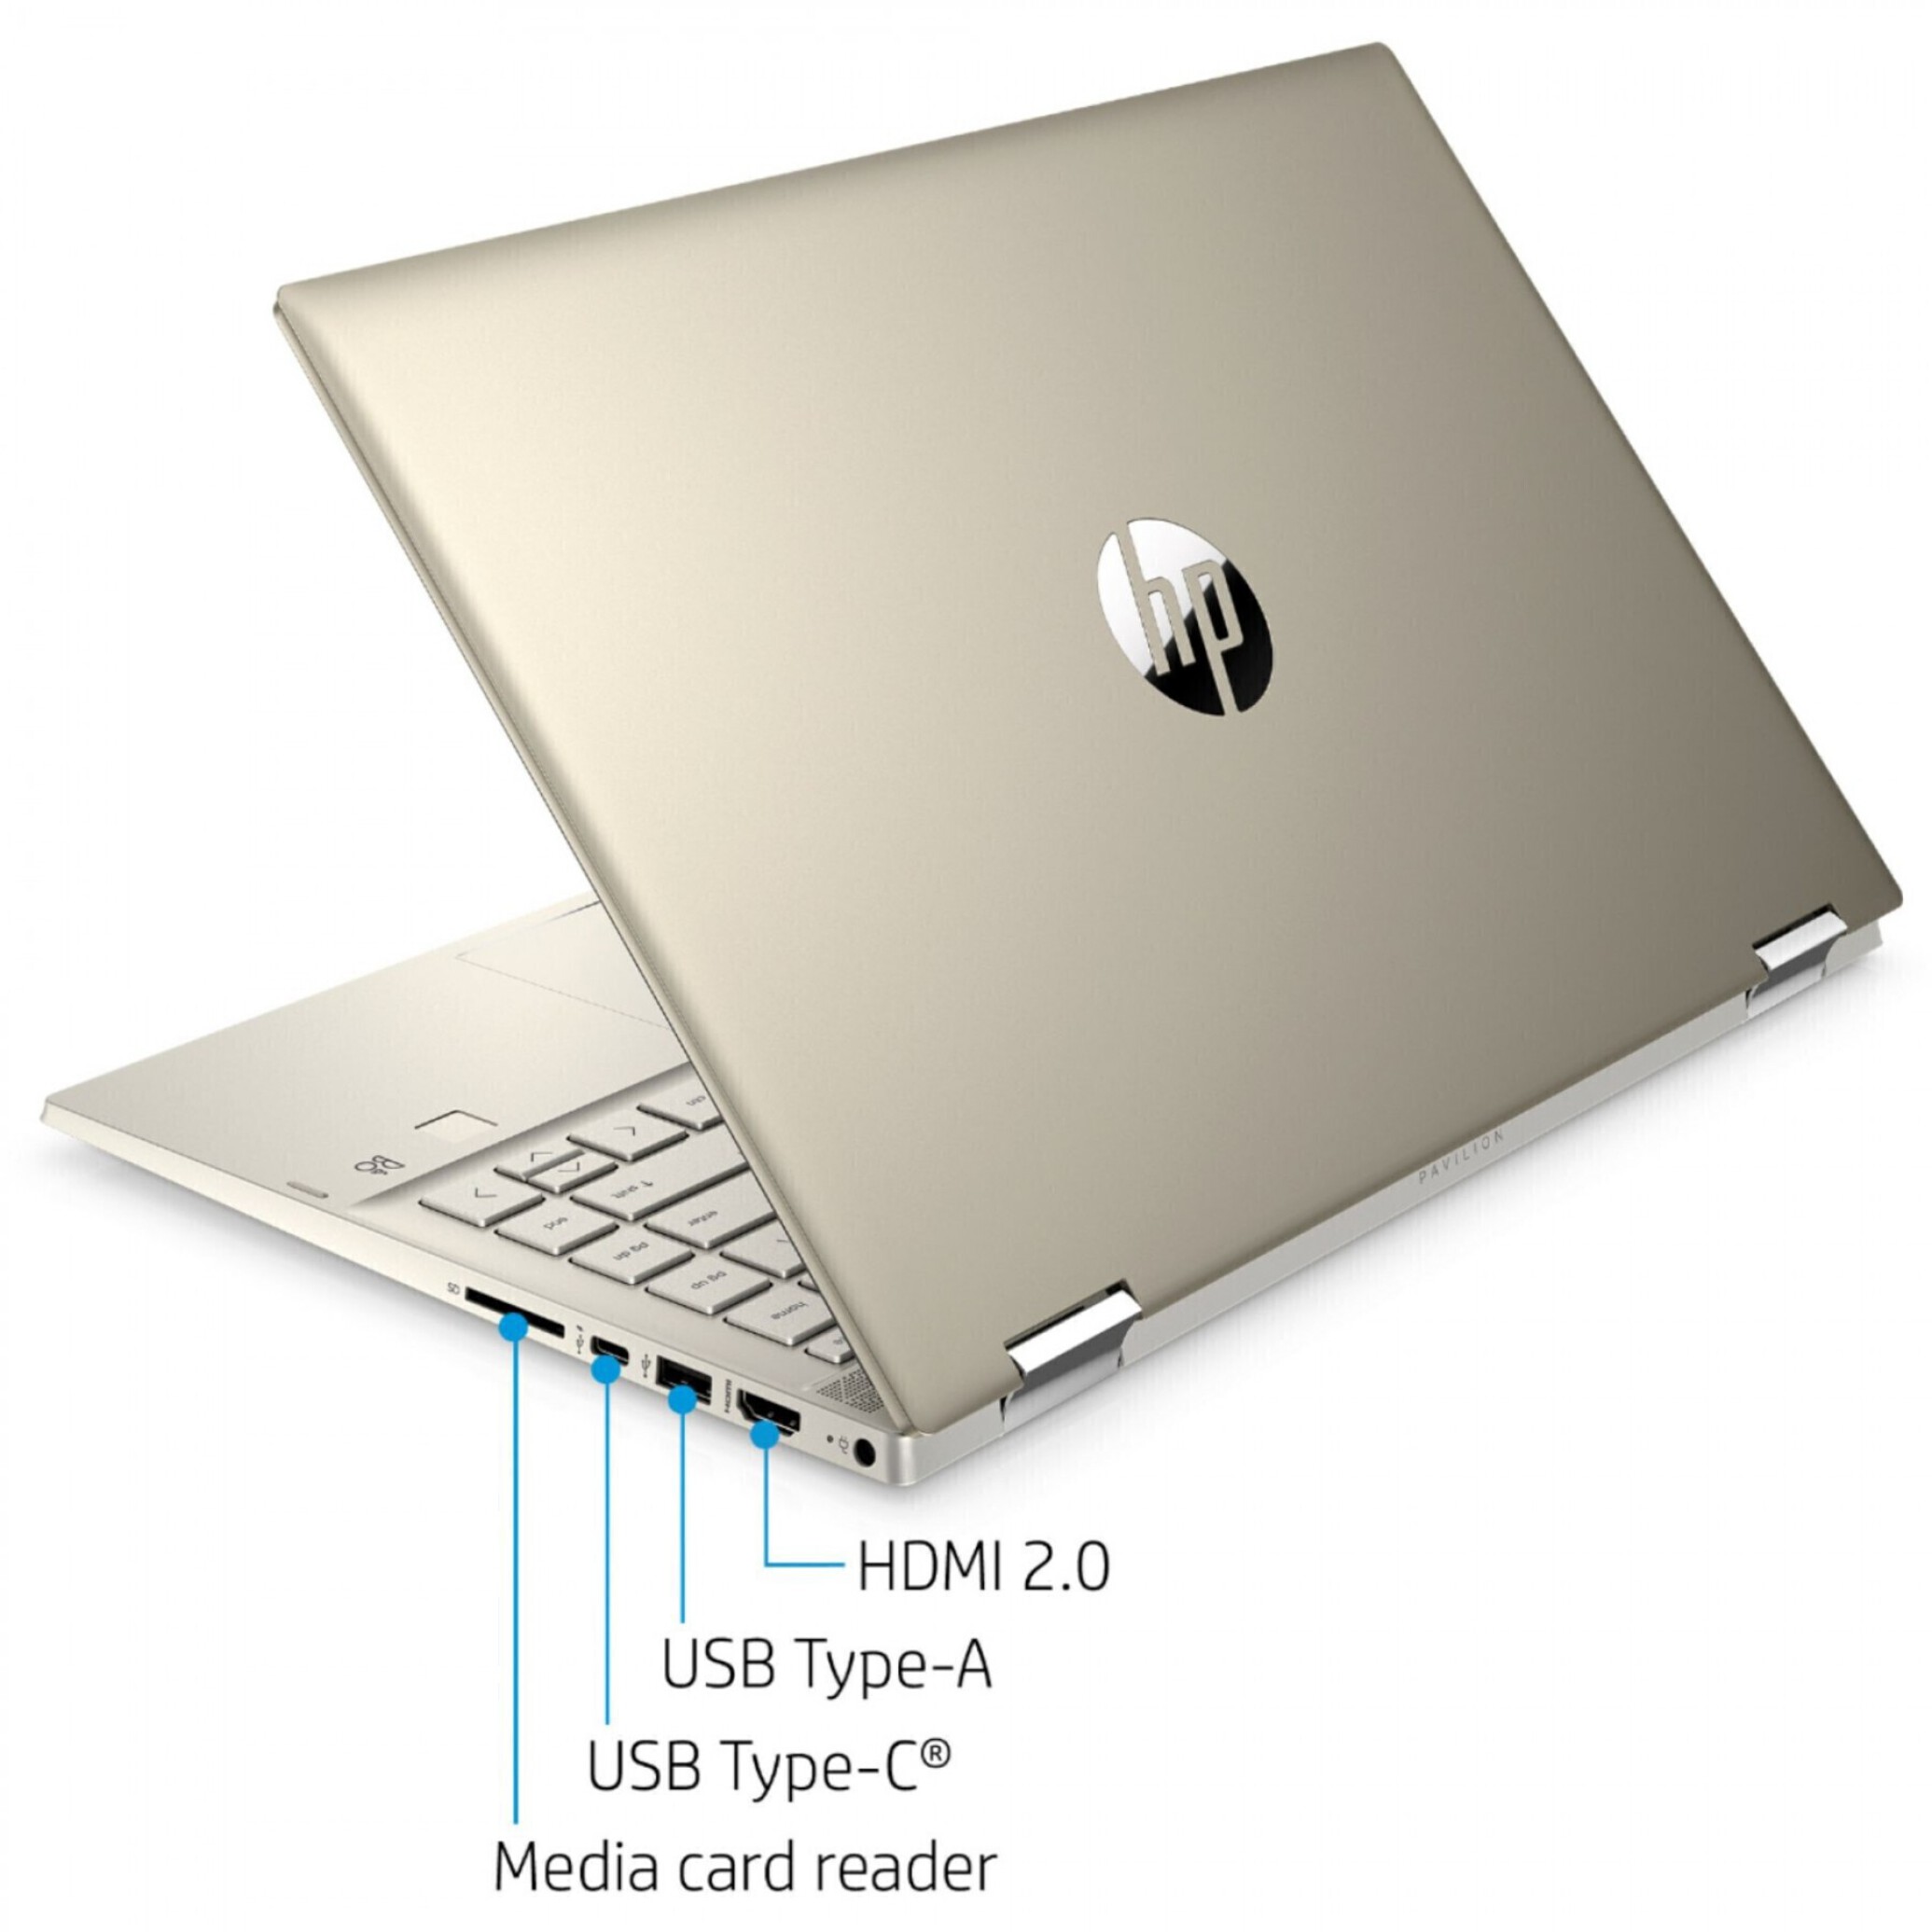  خرید و قیمت لپ تاپ HP Pavilion 14 X360 Core i5 8250U | لاکچری لپ تاپ 